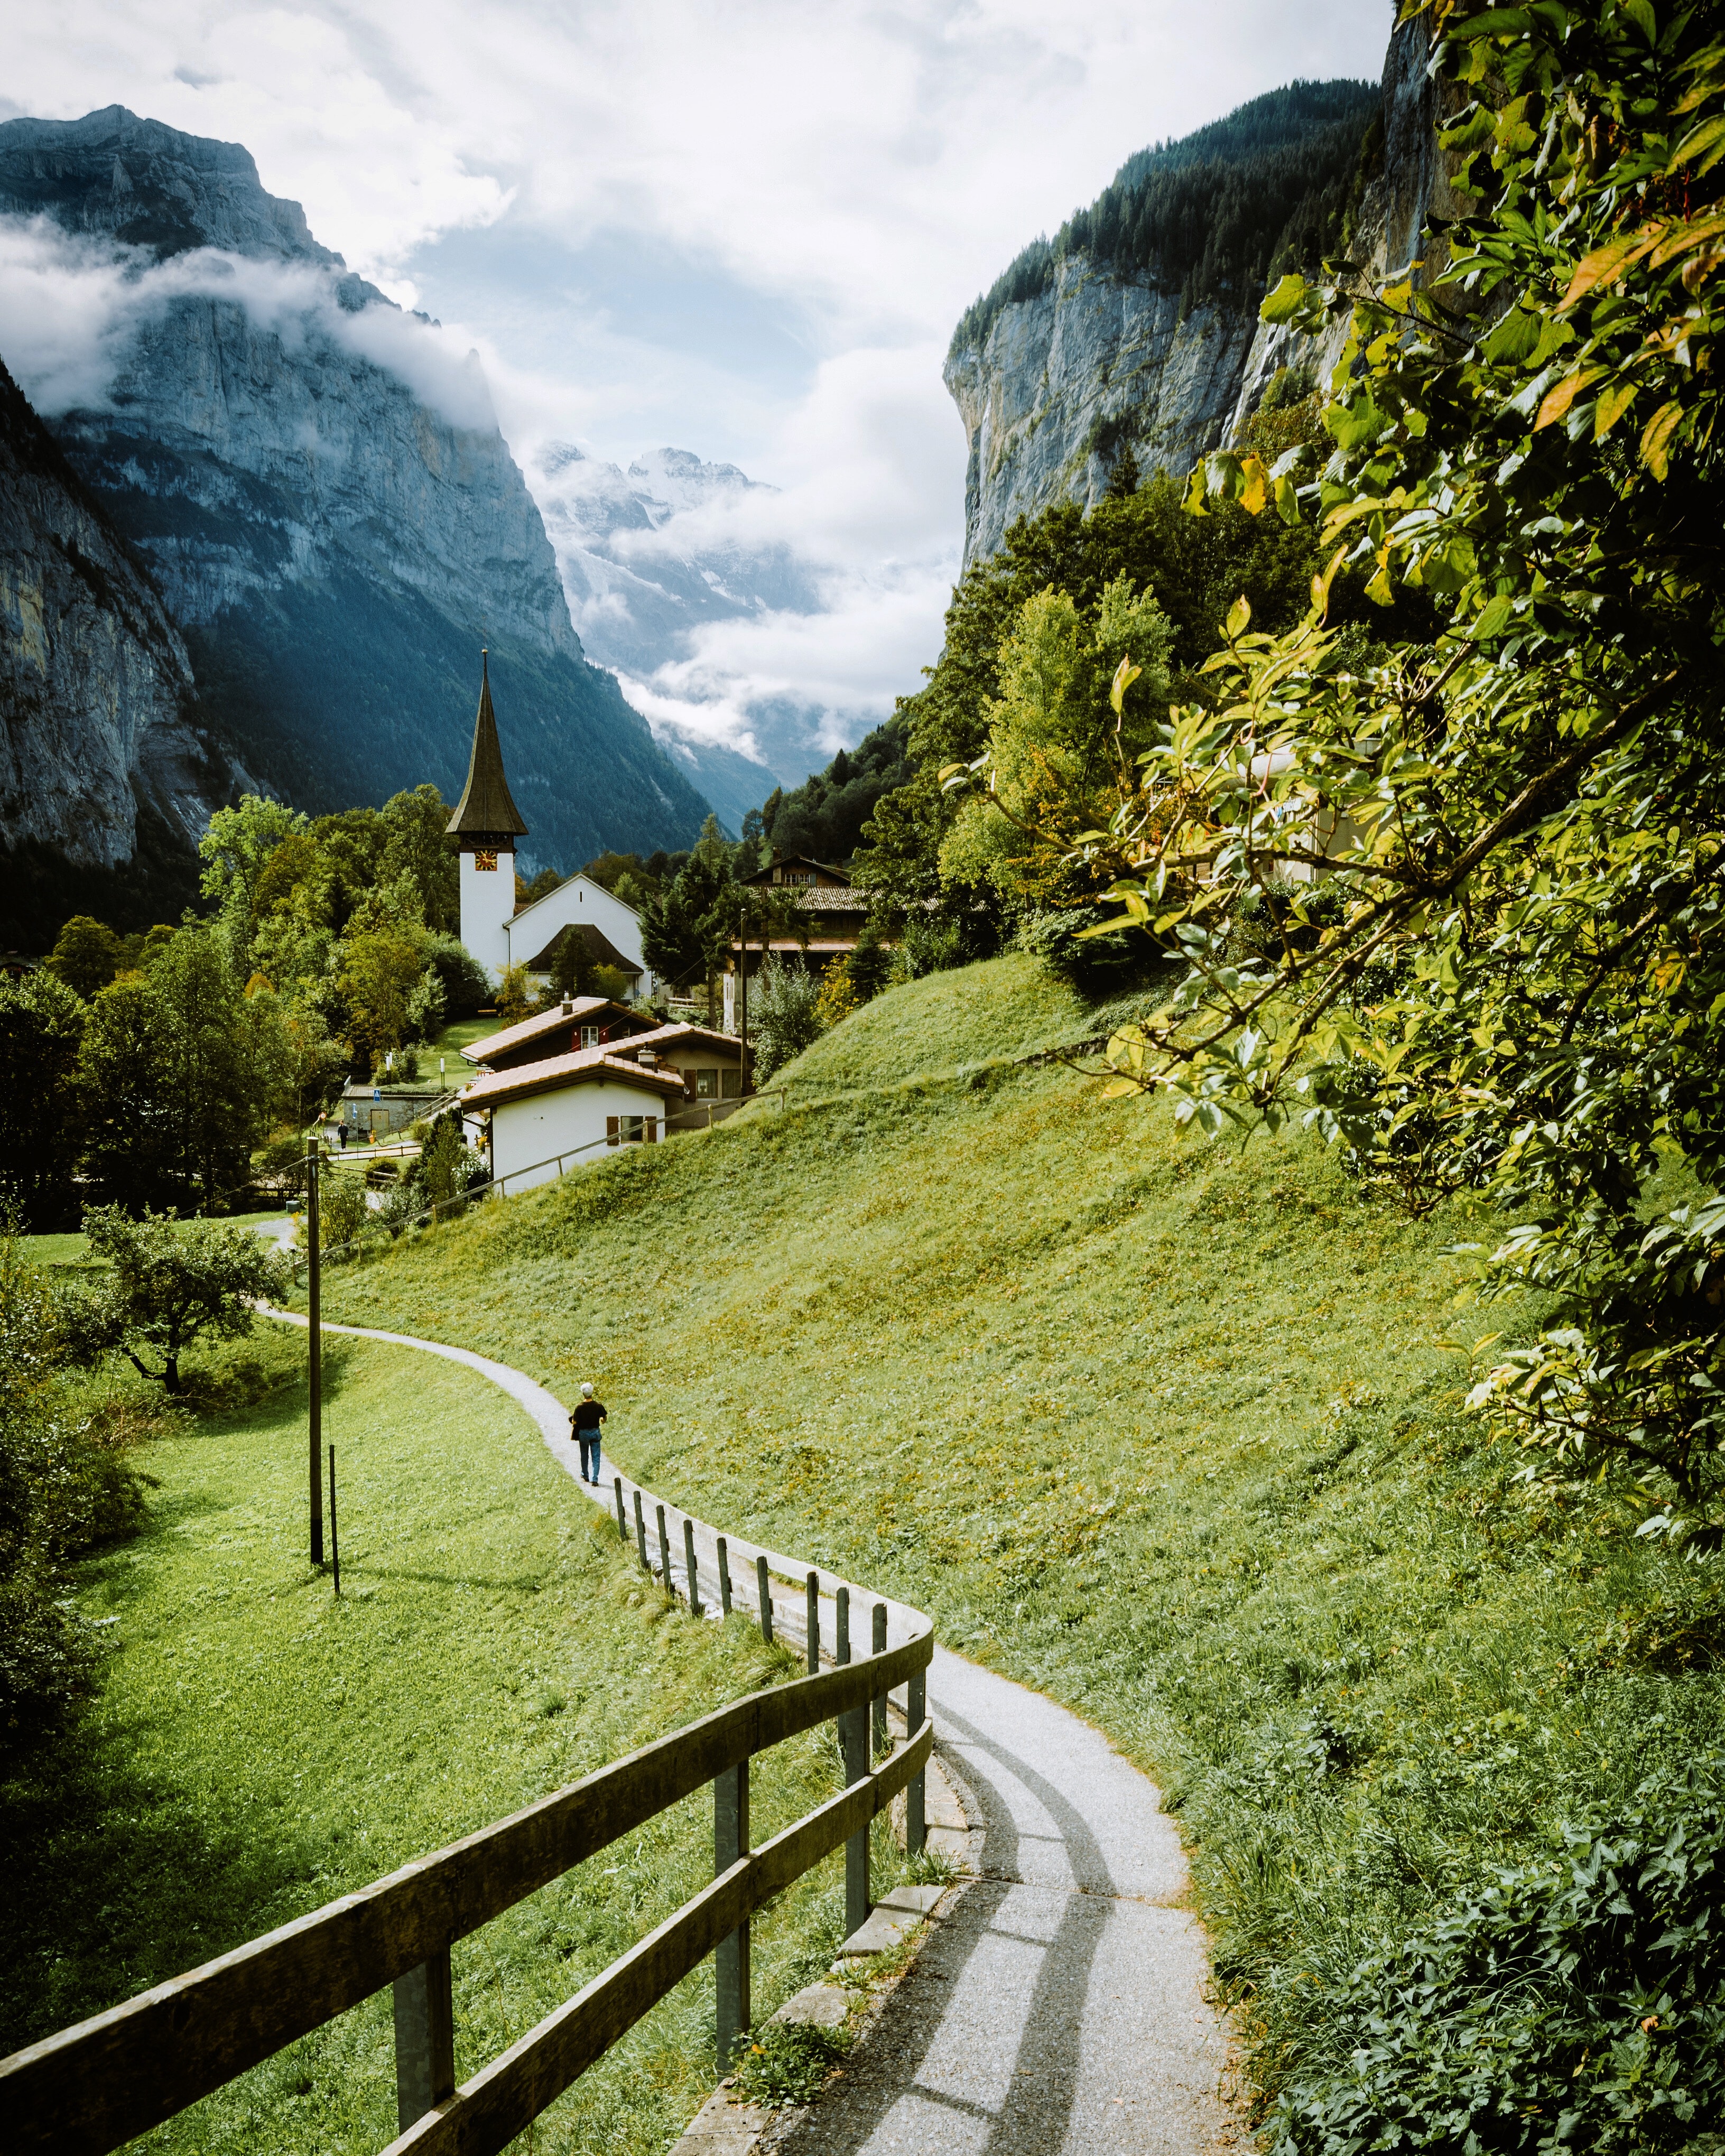 Best Switzerland Photo · 100% Free Downloads